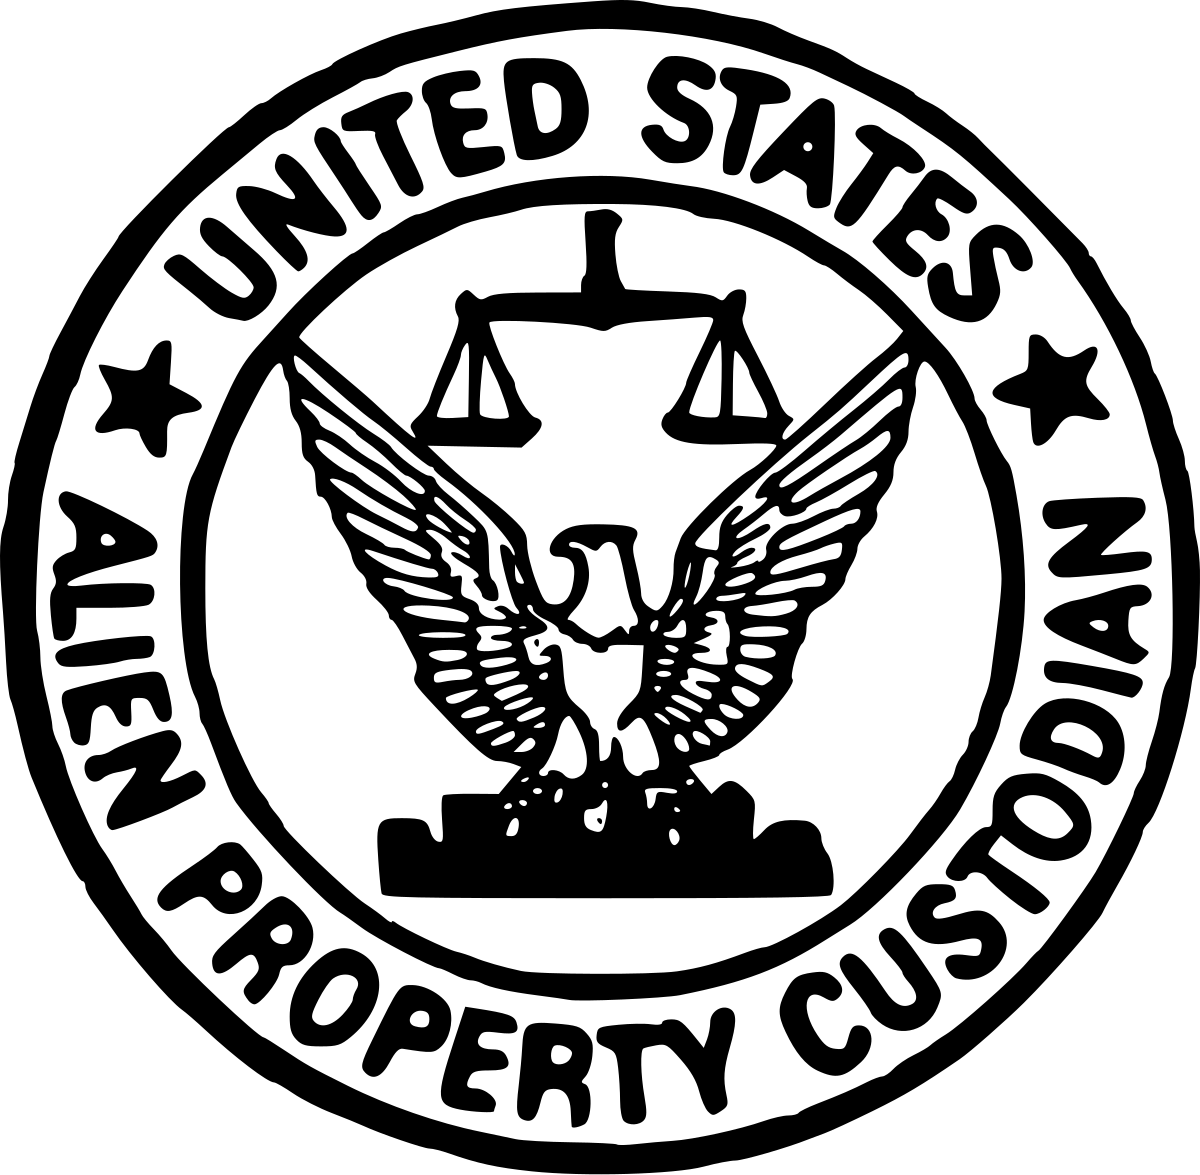 Office of Alien Property Custodian - Wikipedia